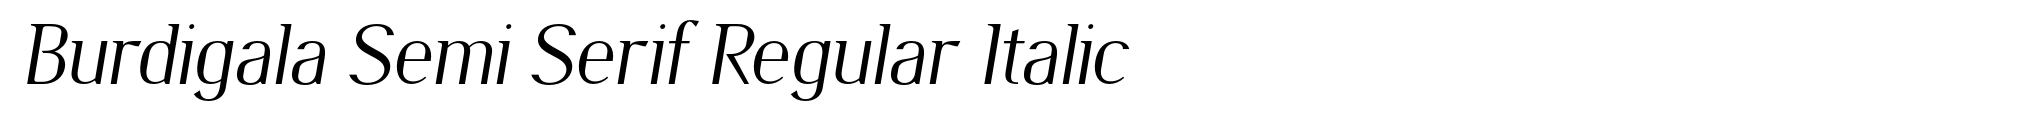 Burdigala Semi Serif Regular Italic image